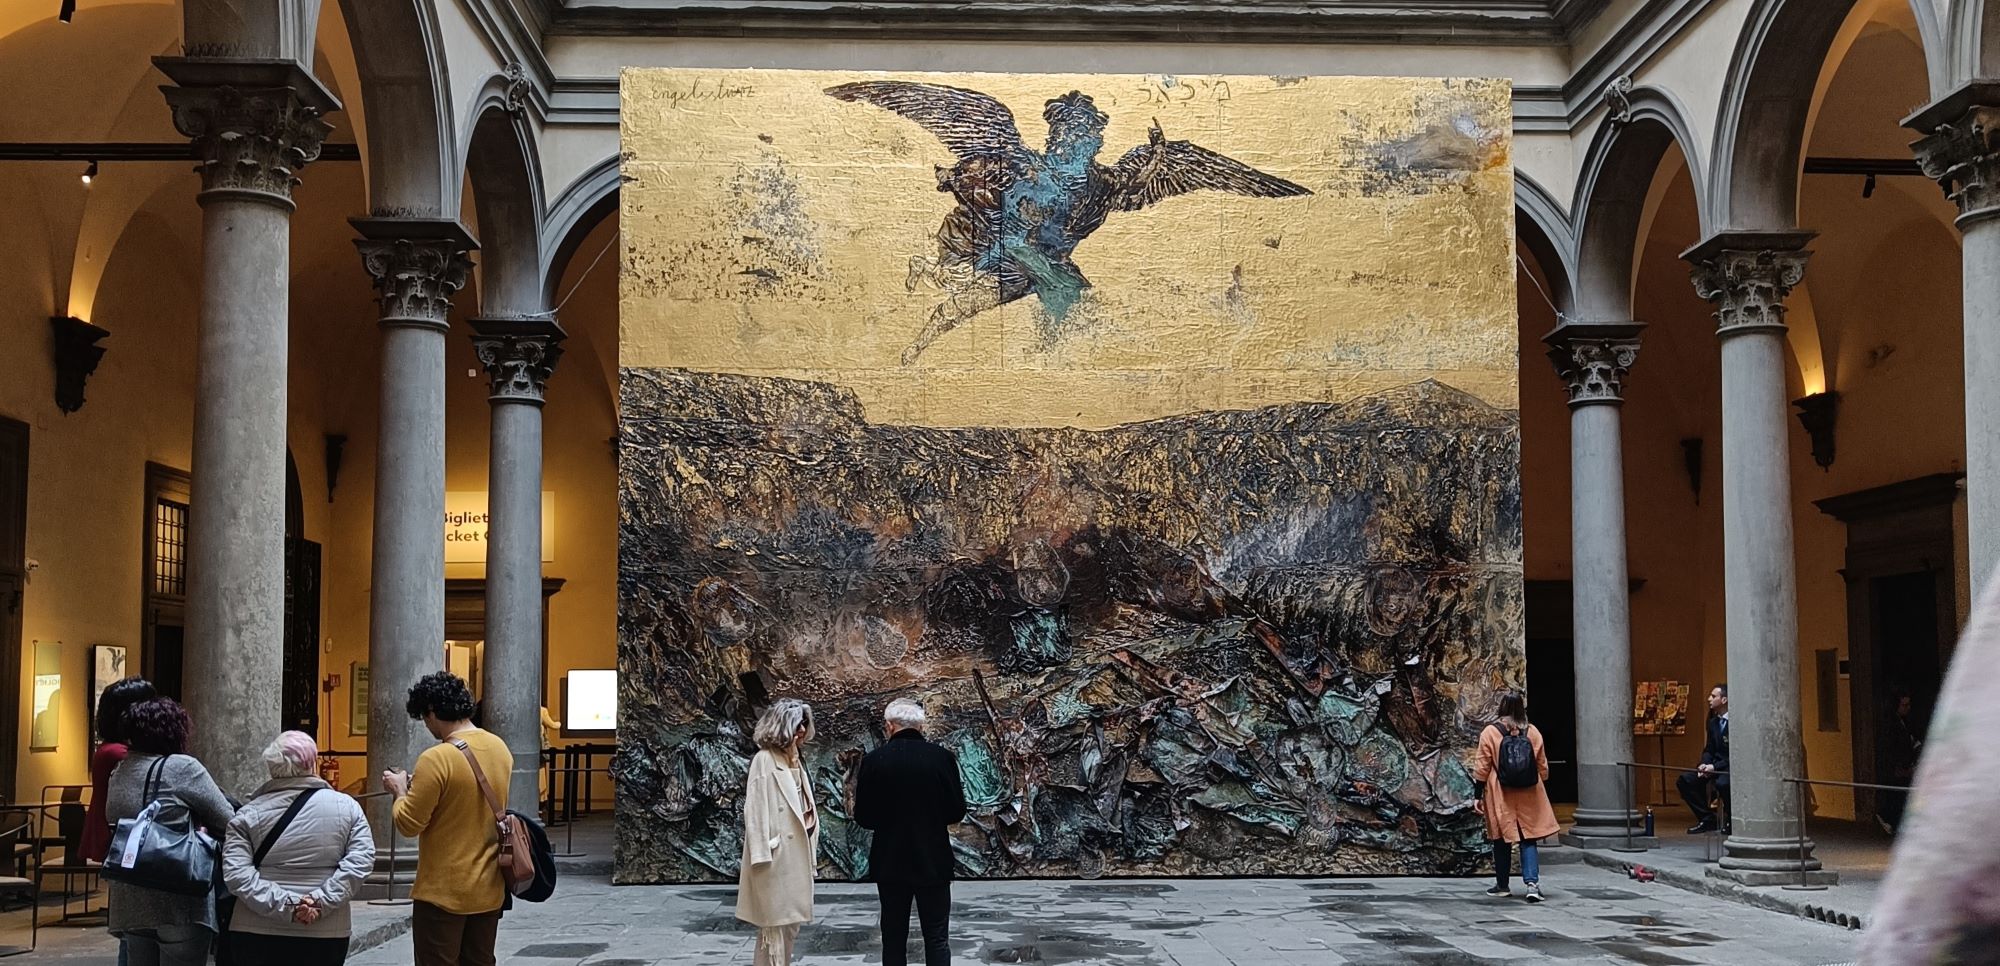 La caduta dell'angelo, Anselm Kiefer nel cortile di Palazzo Strozzi. L'opera posta nel cortile dà il titolo alla nuova mostra dell'artista tedesco a Firenze.